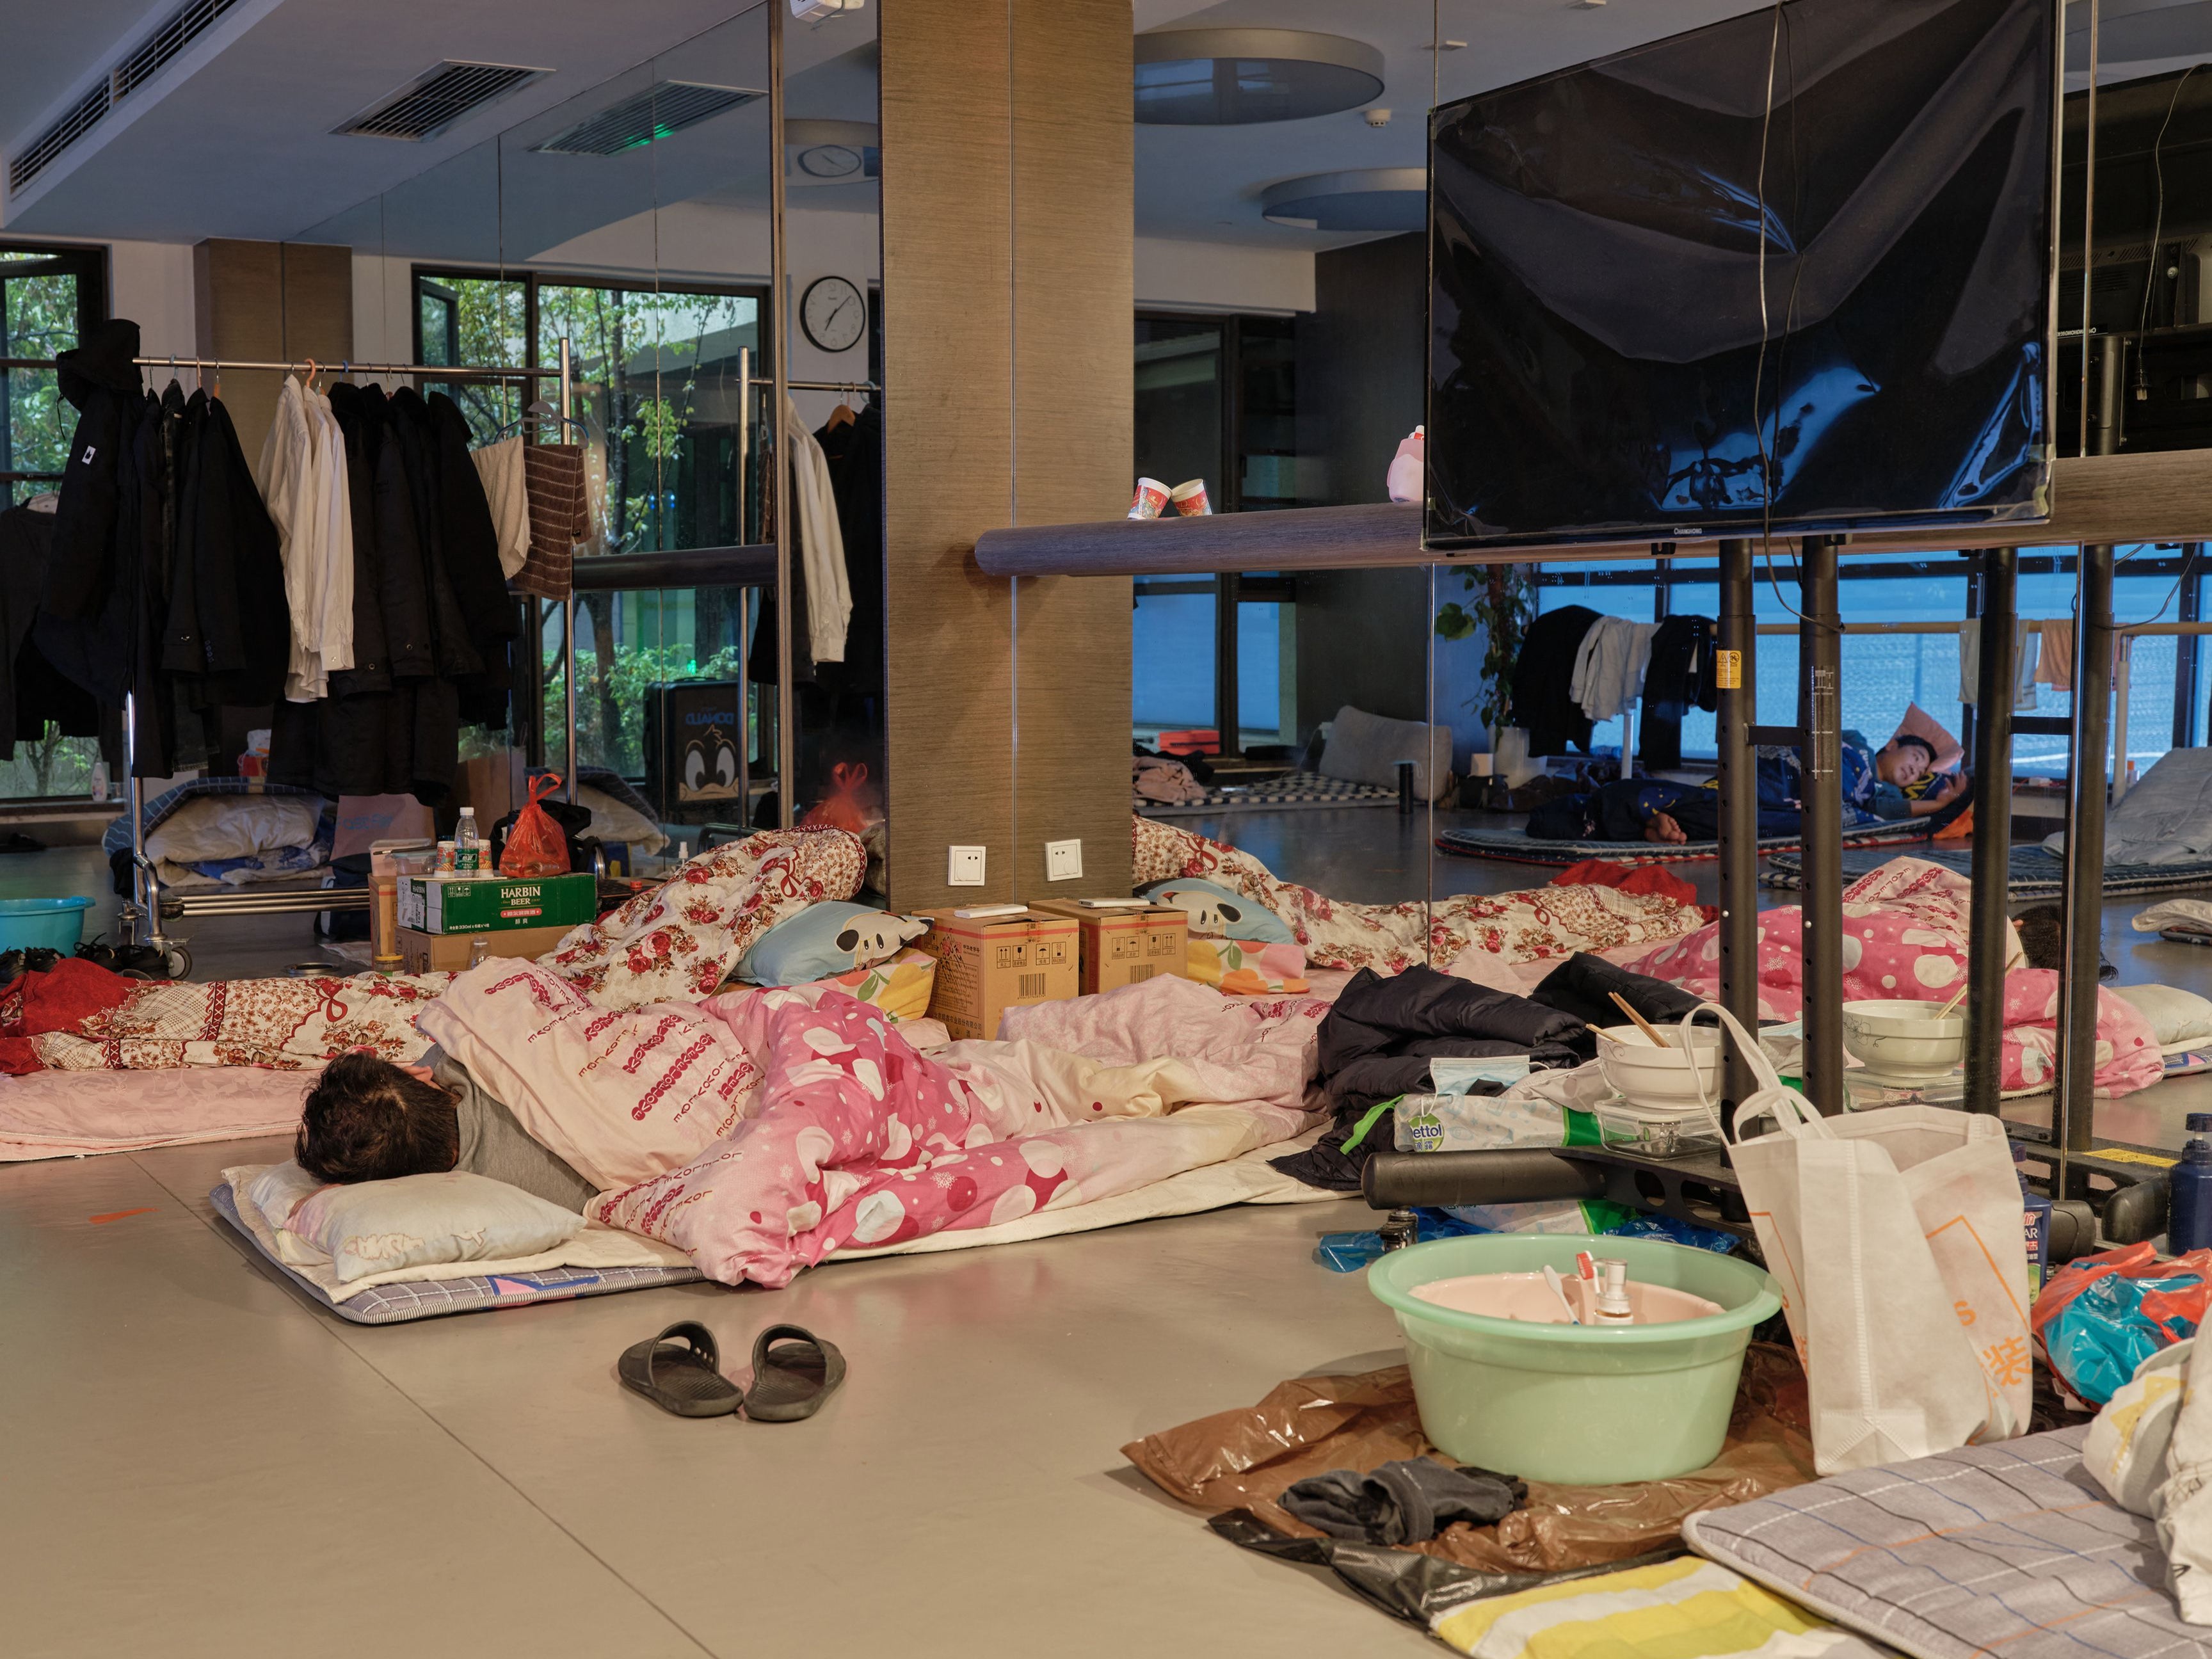 Un trabajador comunitario toma una siesta en una cama temporal en un gimnasio durante un confinamiento por covid-19 en el distrito Pudong de Shanghái